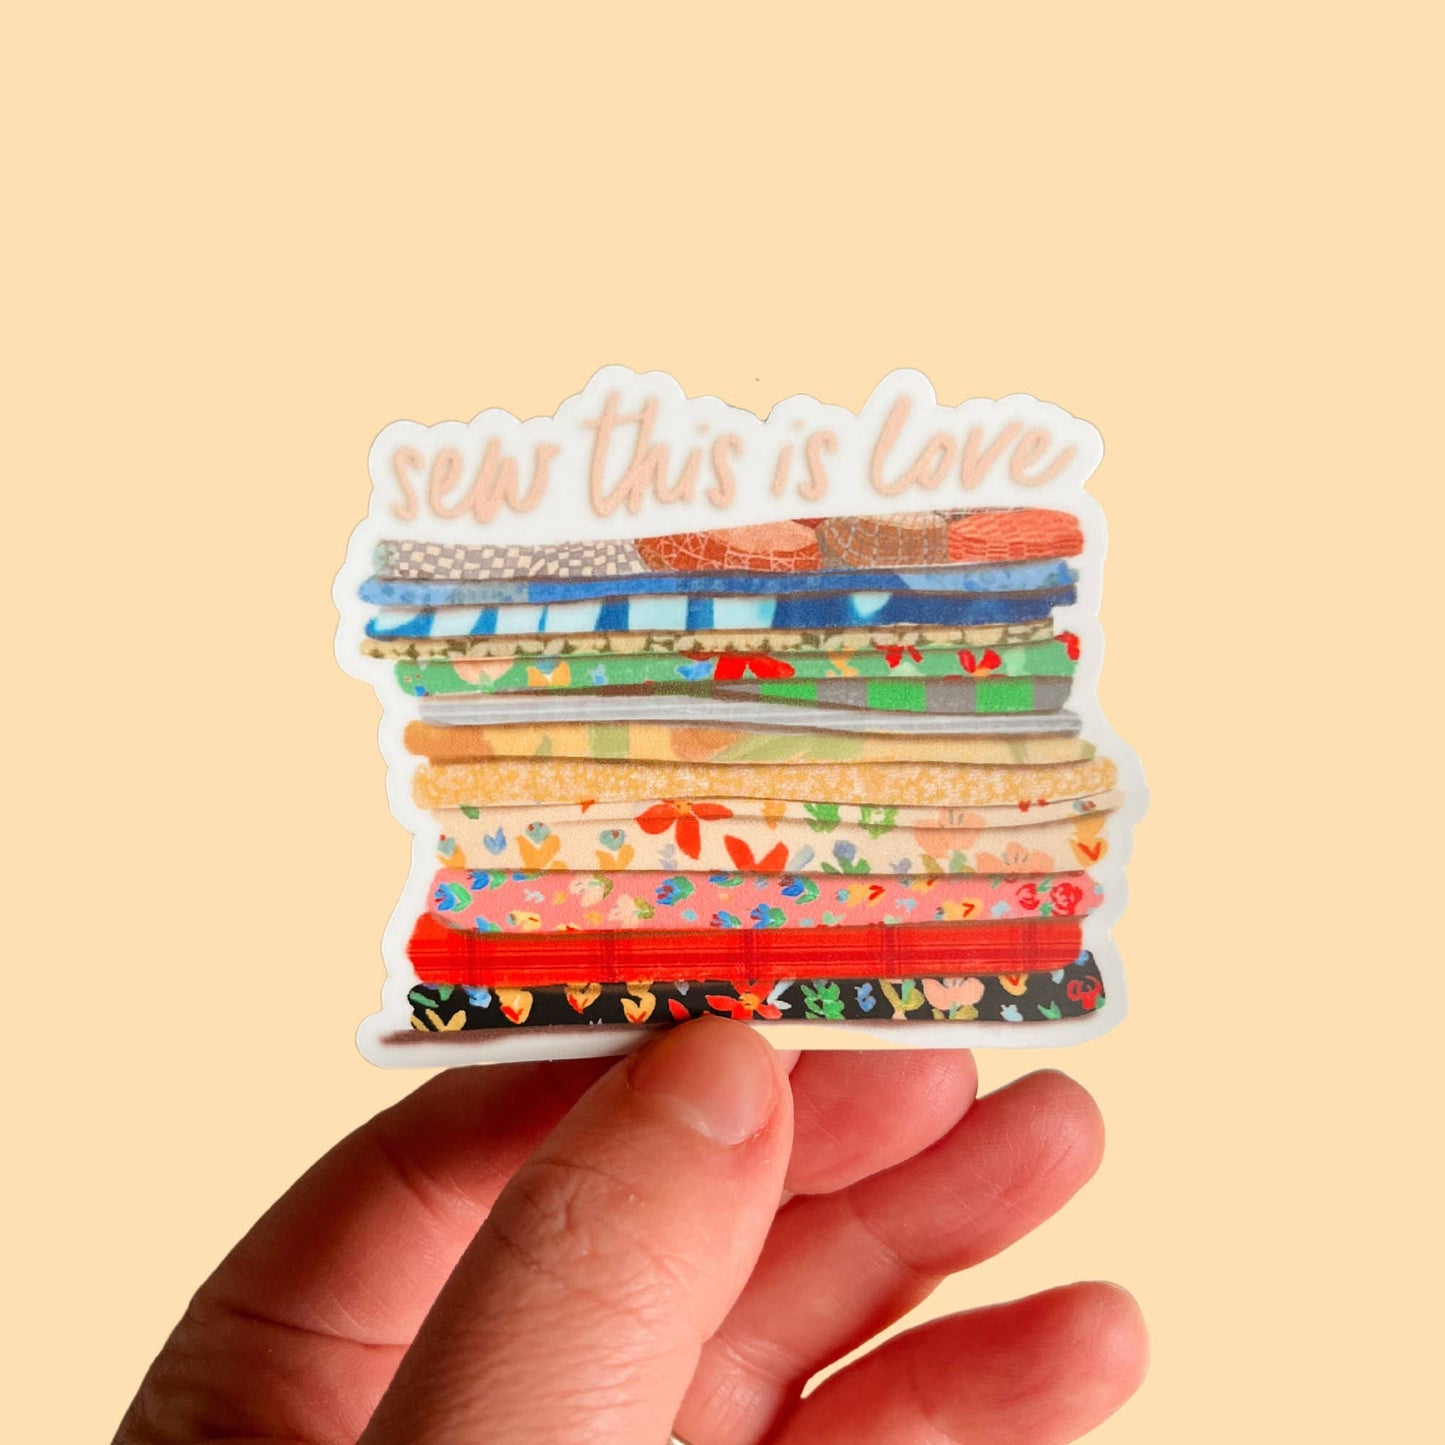 Sew This Is Love | Vinyl Sticker